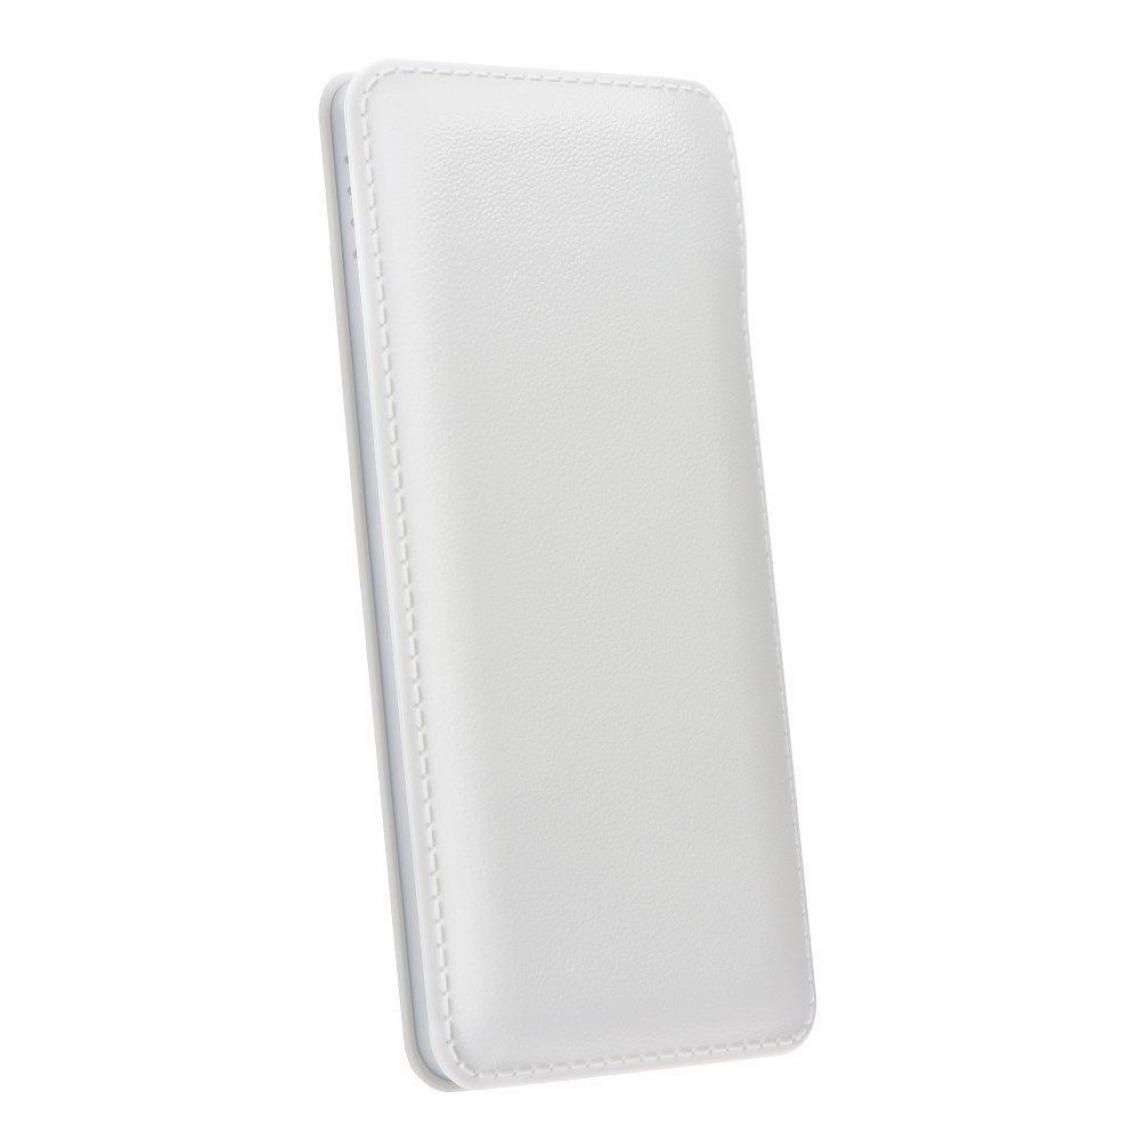 Ozzzo - Chargeur batterie externe 20000 mAh powerbank ozzzo blanc pour ASUS ZenFon 2 Selfie ZD551KL - Autres accessoires smartphone